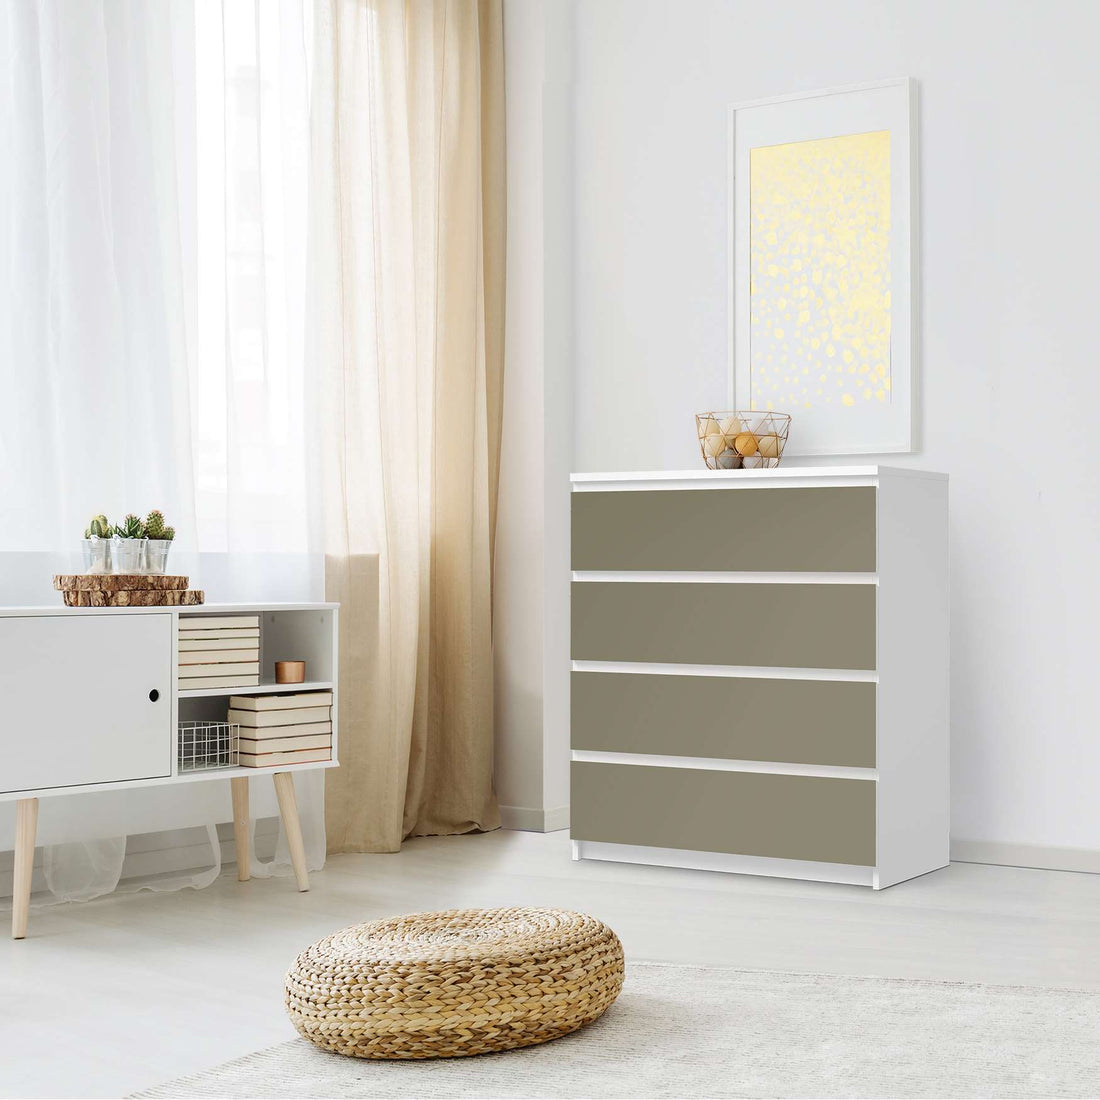 Folie für Möbel Braungrau Light - IKEA Malm Kommode 4 Schubladen - Schlafzimmer